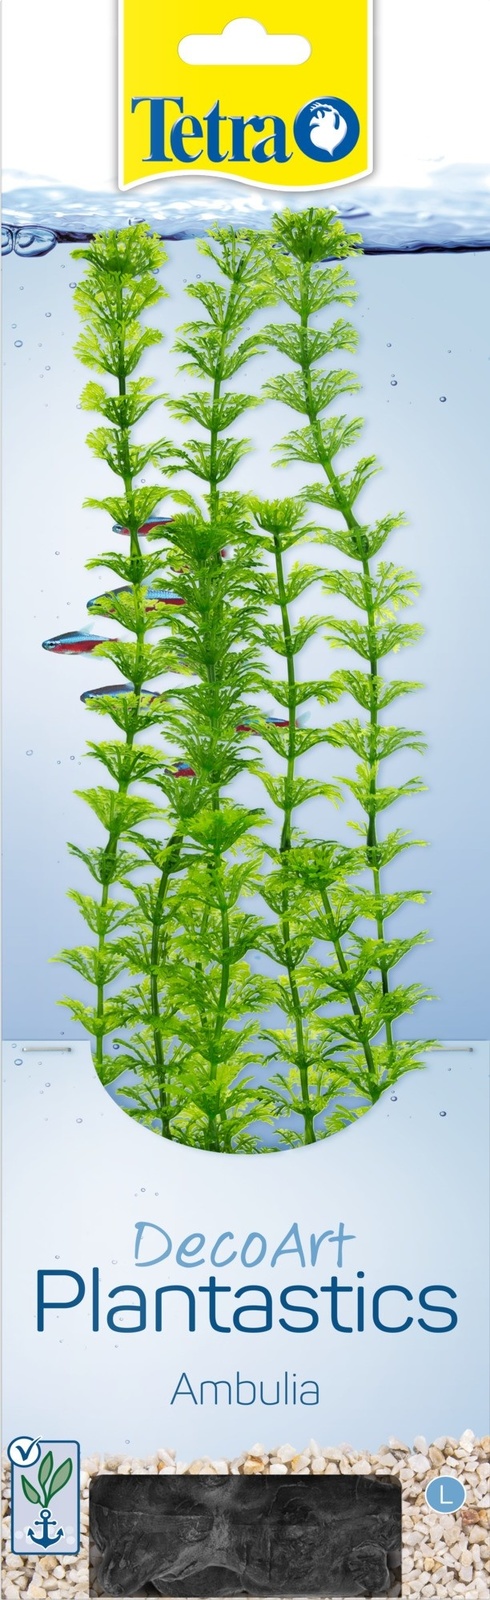 Tetra (оборудование) Tetra (оборудование) растение DecoArt Plantastics Ambulia 30 см (115 г) tetra оборудование tetra оборудование сачок 4 15см 58 г